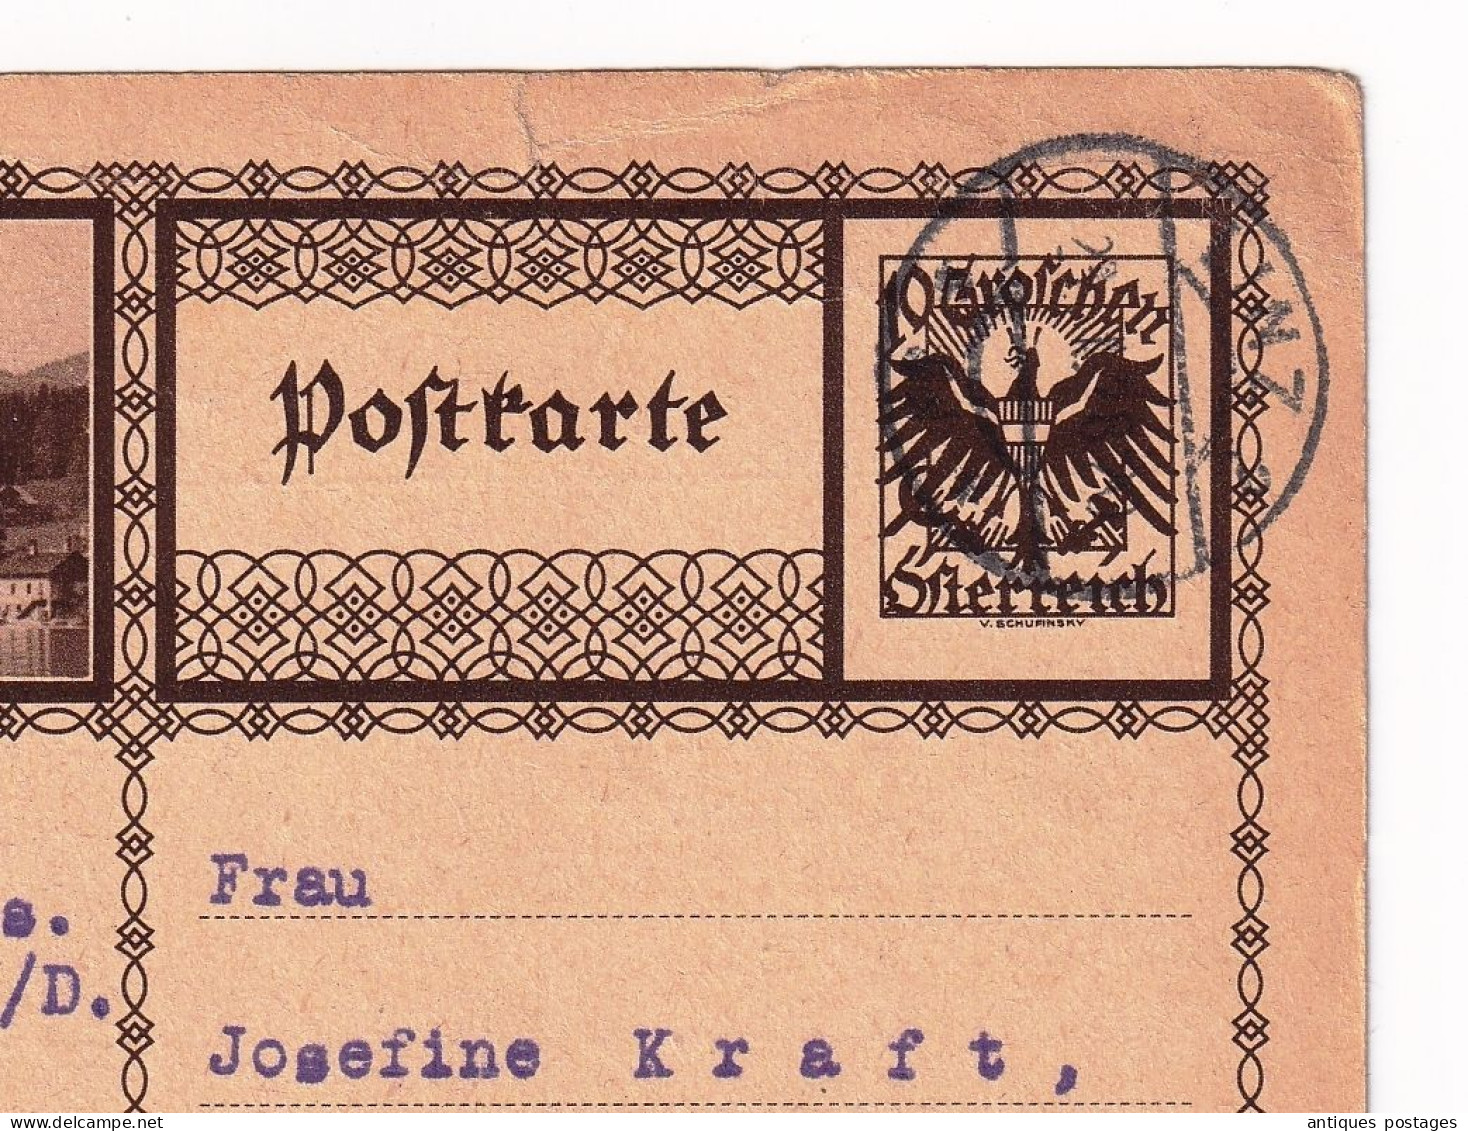 Postkarte 1928 Linz Papierwarenfabrik Österreich Austria Autriche Wien Josefine Kraft - Briefkaarten